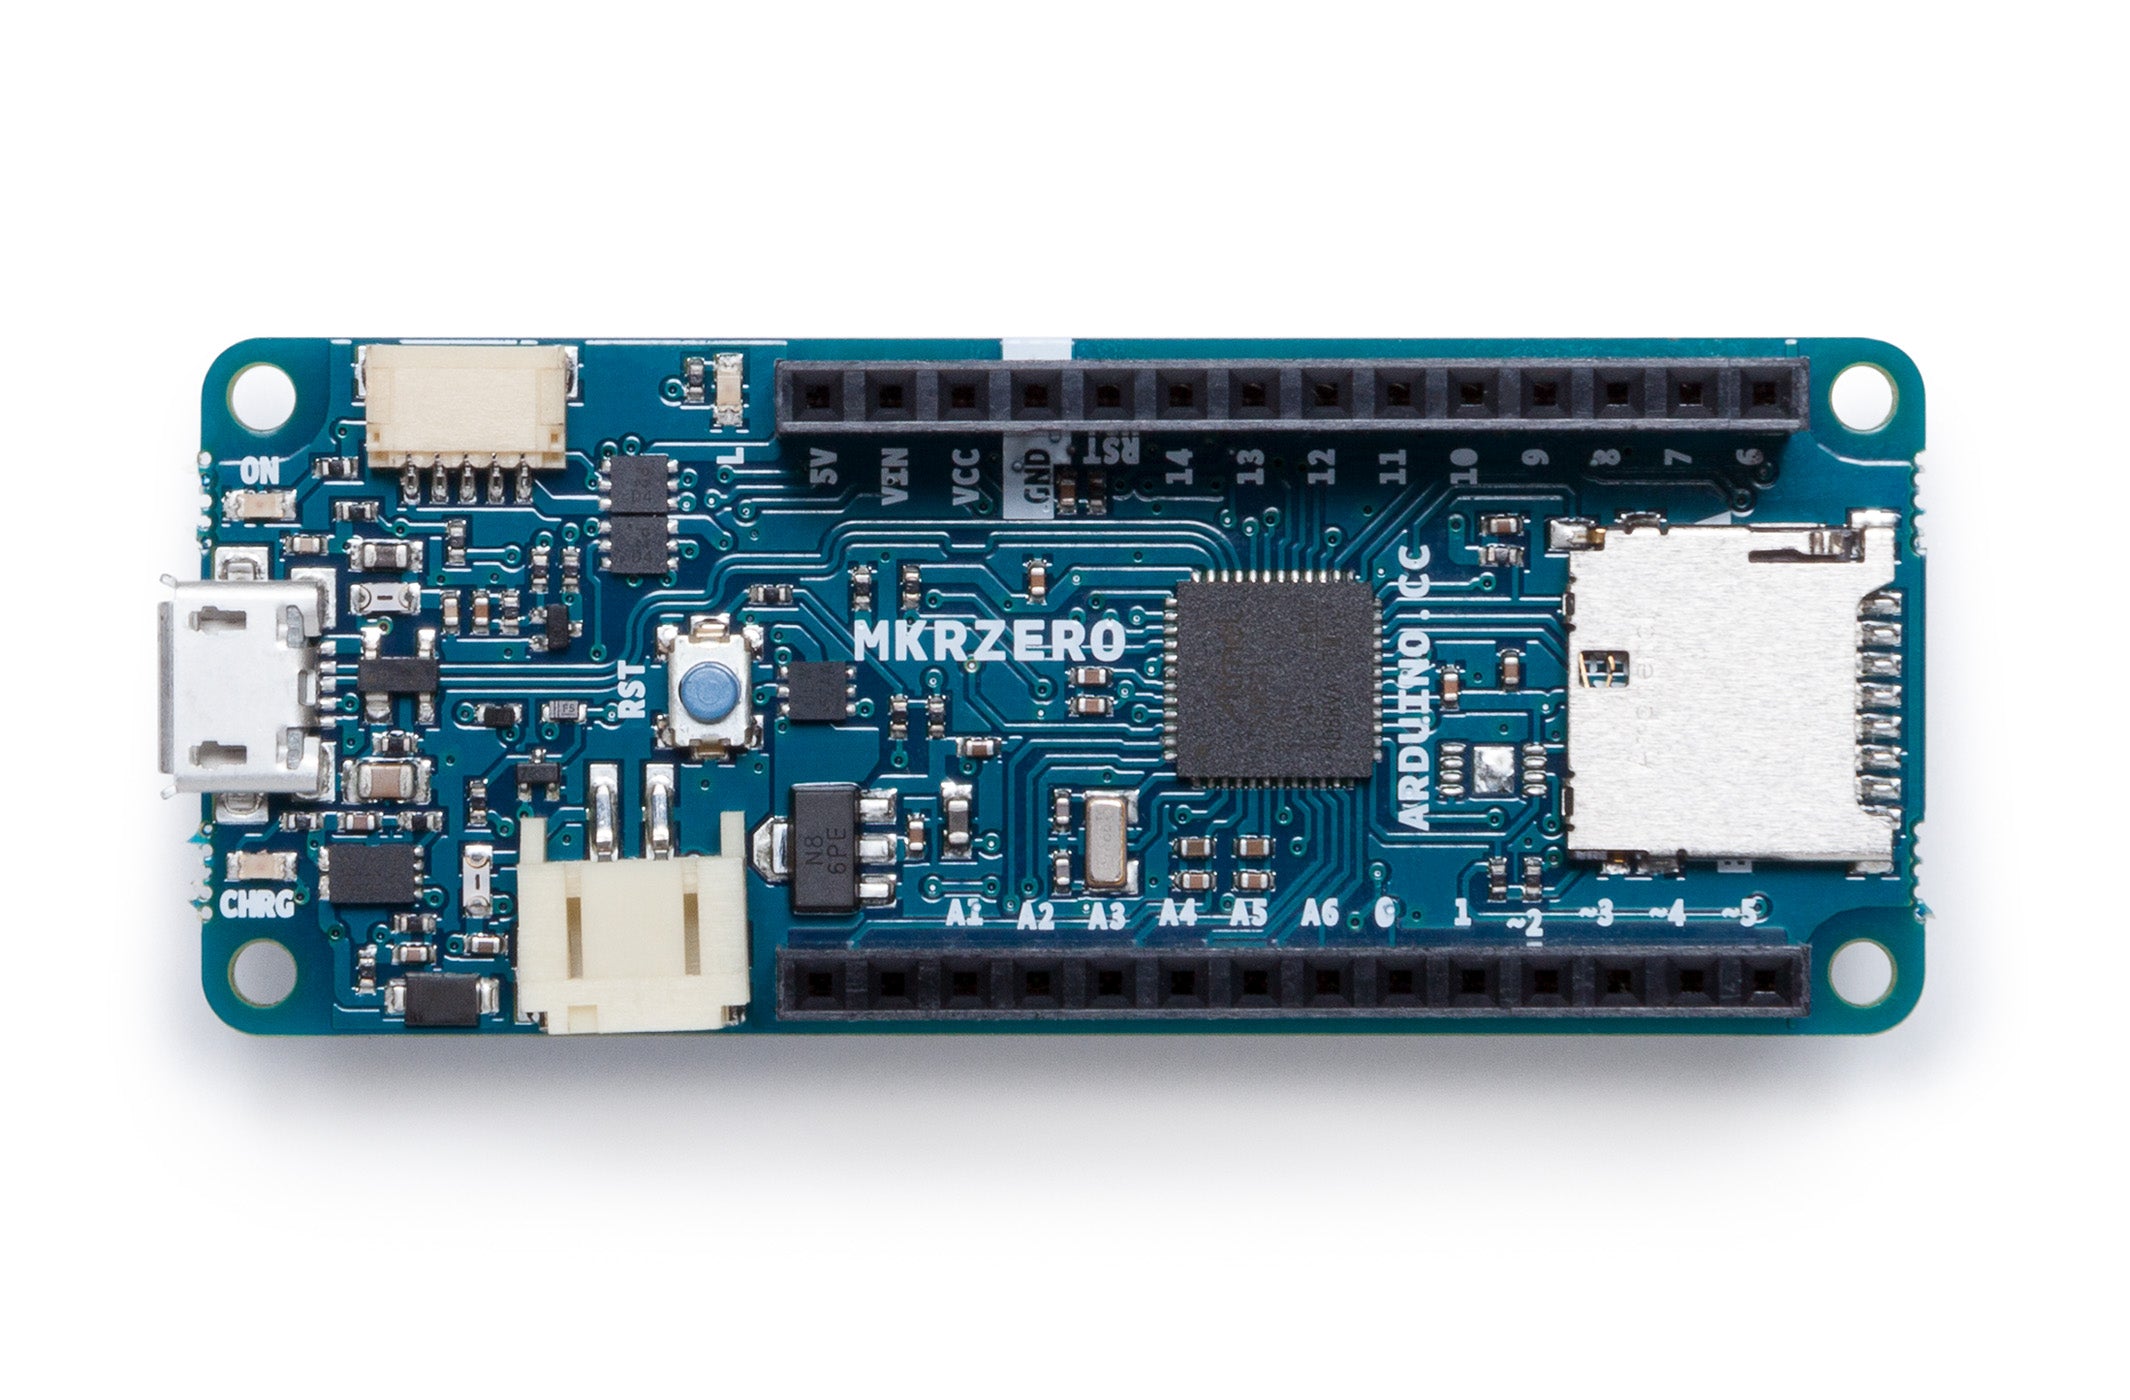 MKR ZERO 意大利Arduino開發板入門編程開源硬件